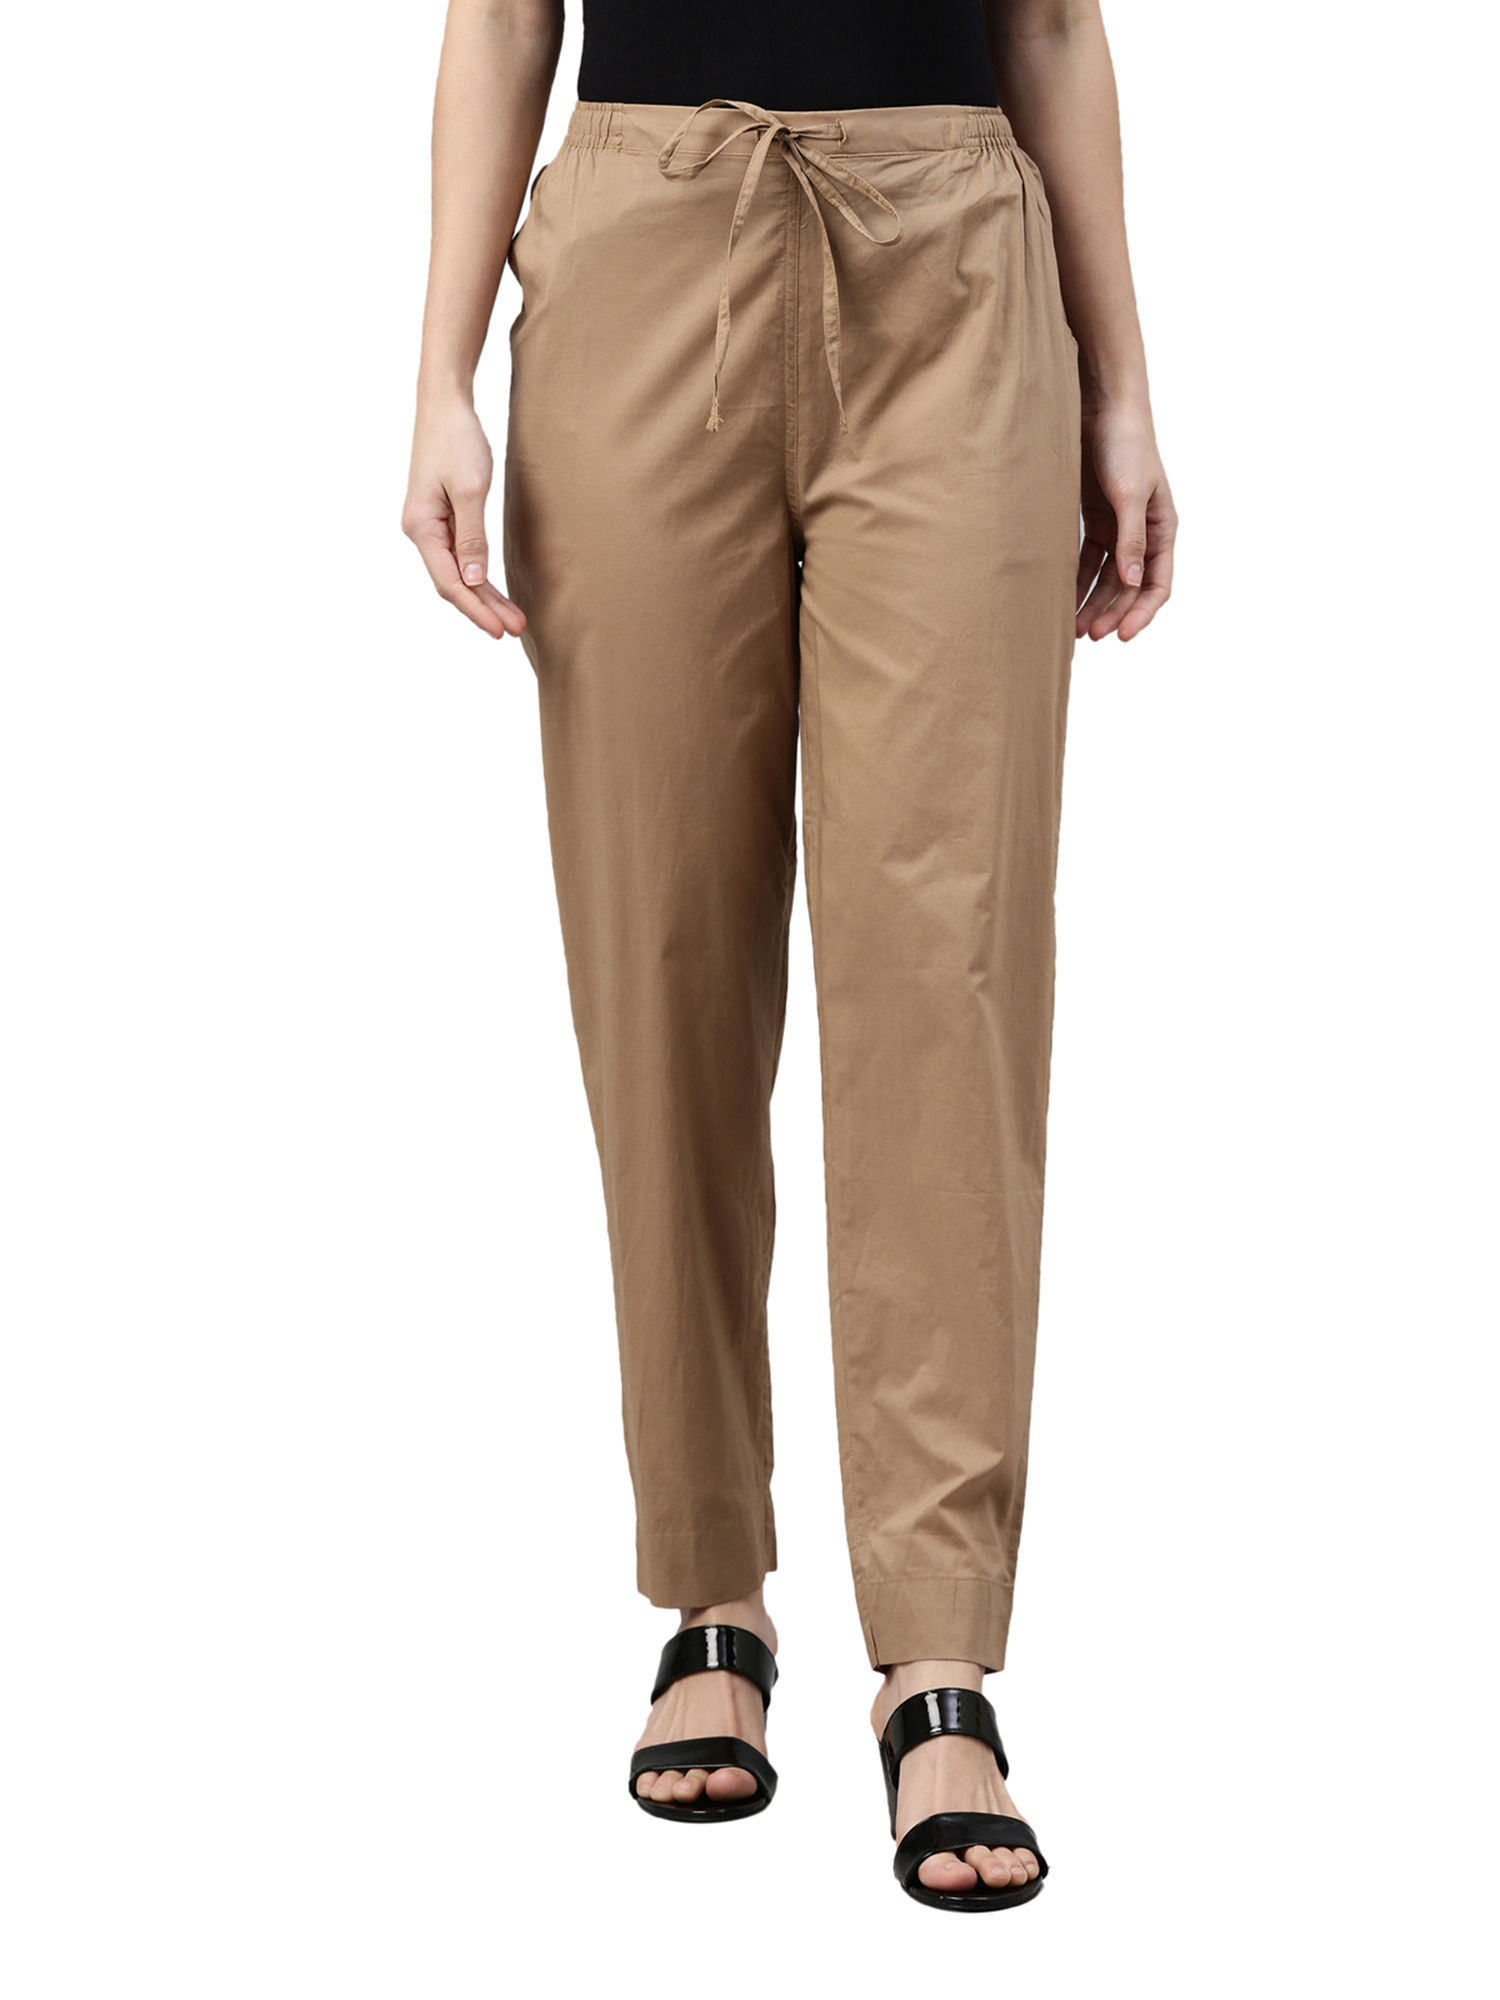 Light Brown Trousers  Buy Light Brown Trousers online in India